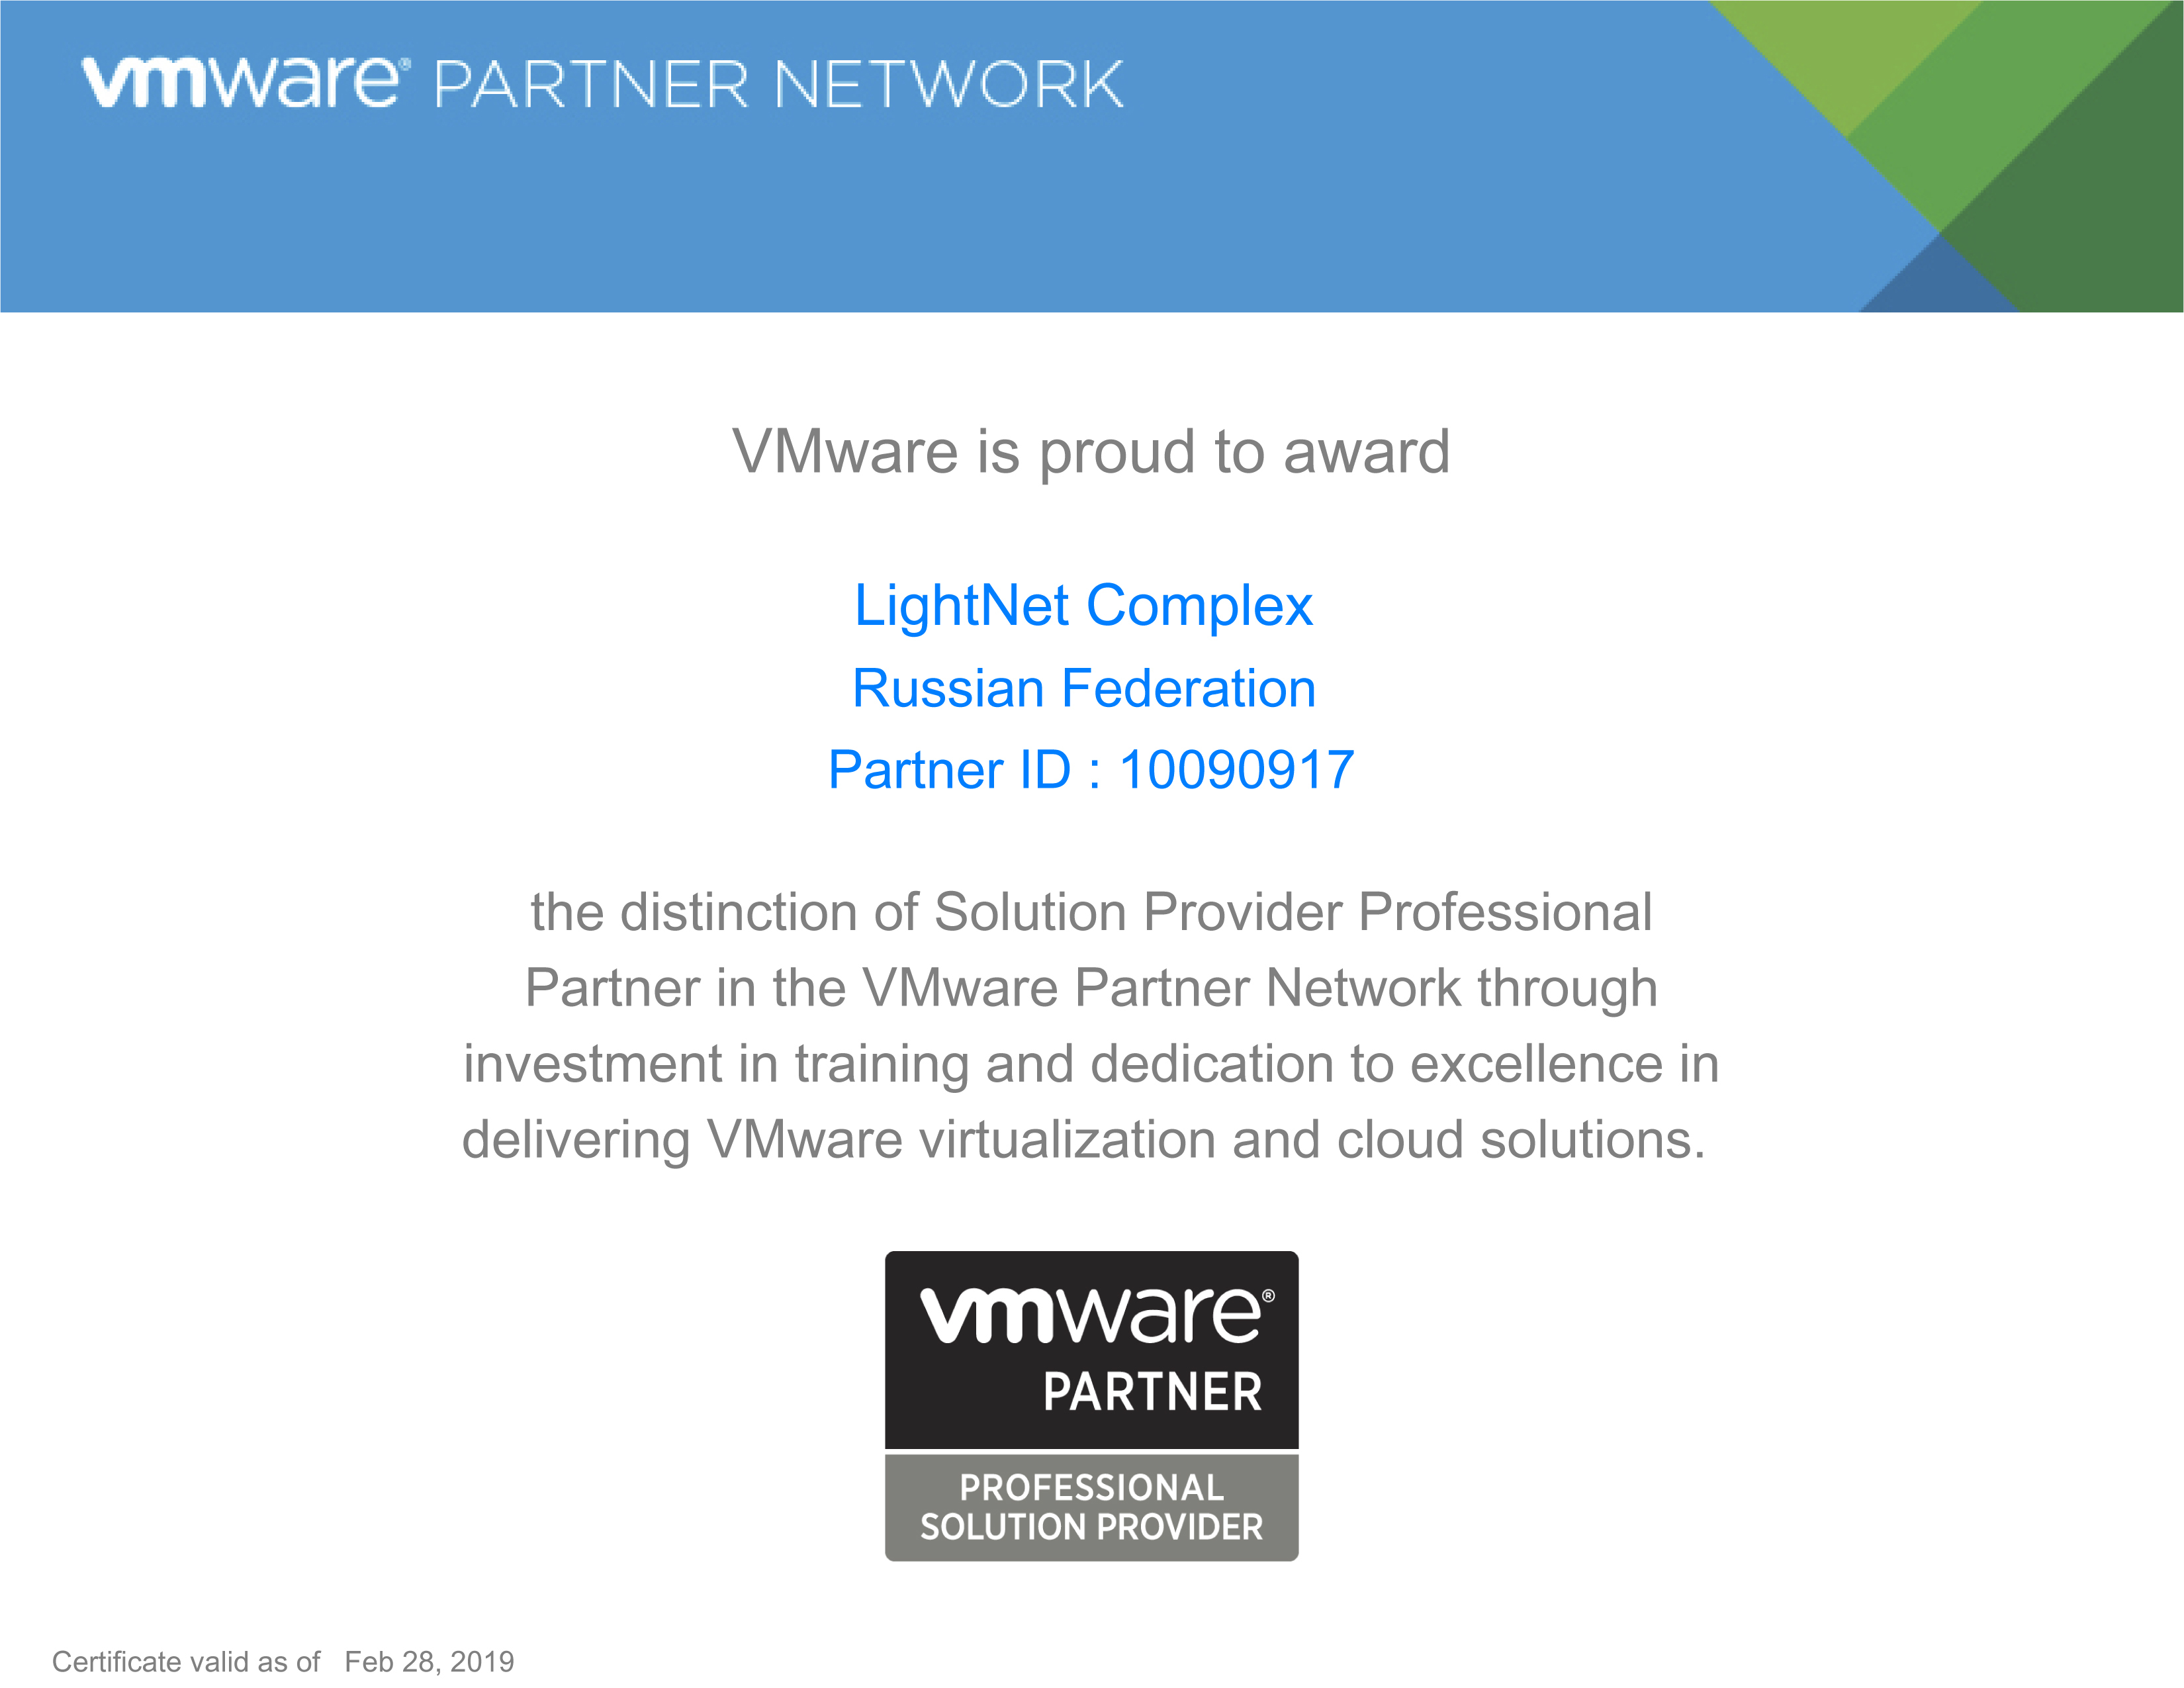 VMware - Solution Provider Professional Partner